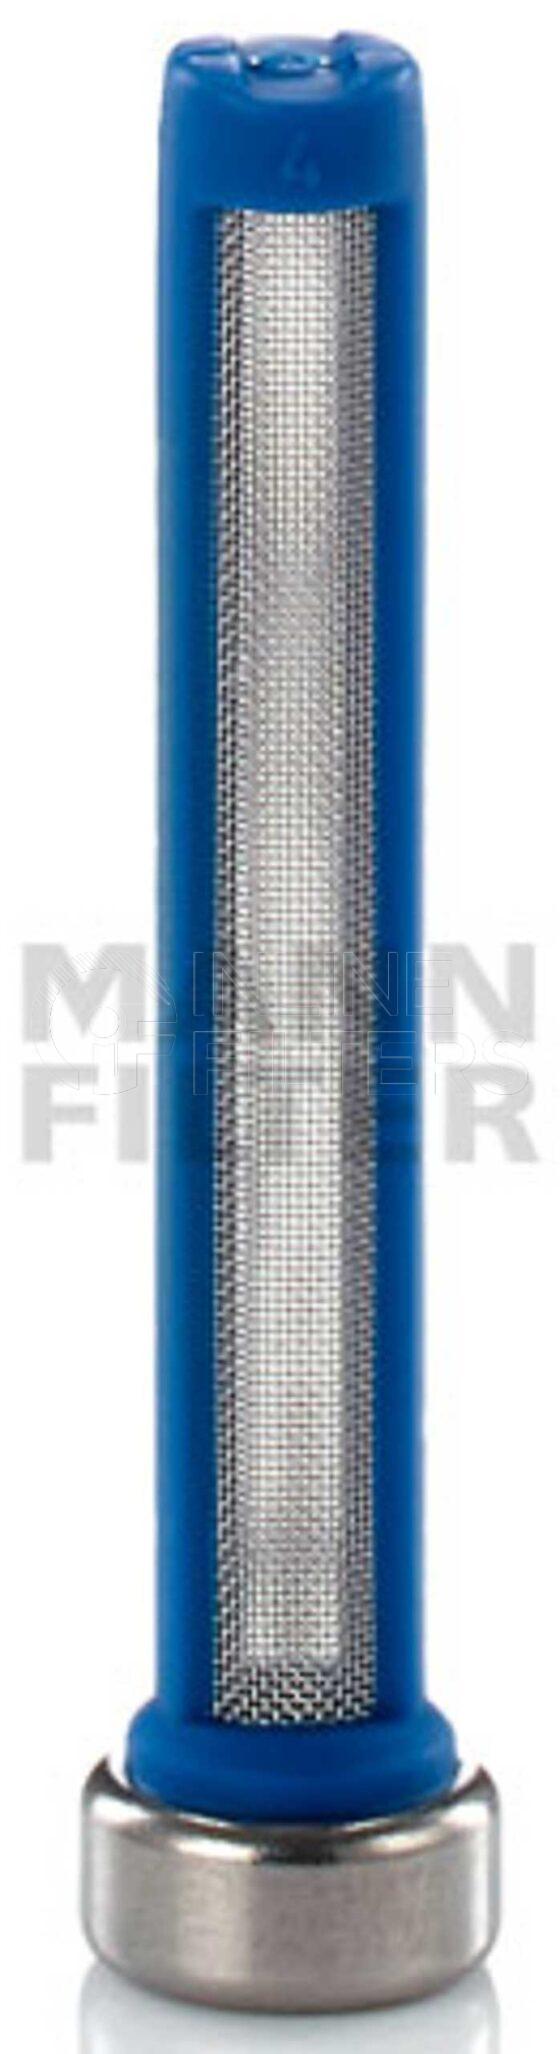 Inline FF32058. Fuel Filter Product – Adblue Urea – Cartridge Product Fuel filter product